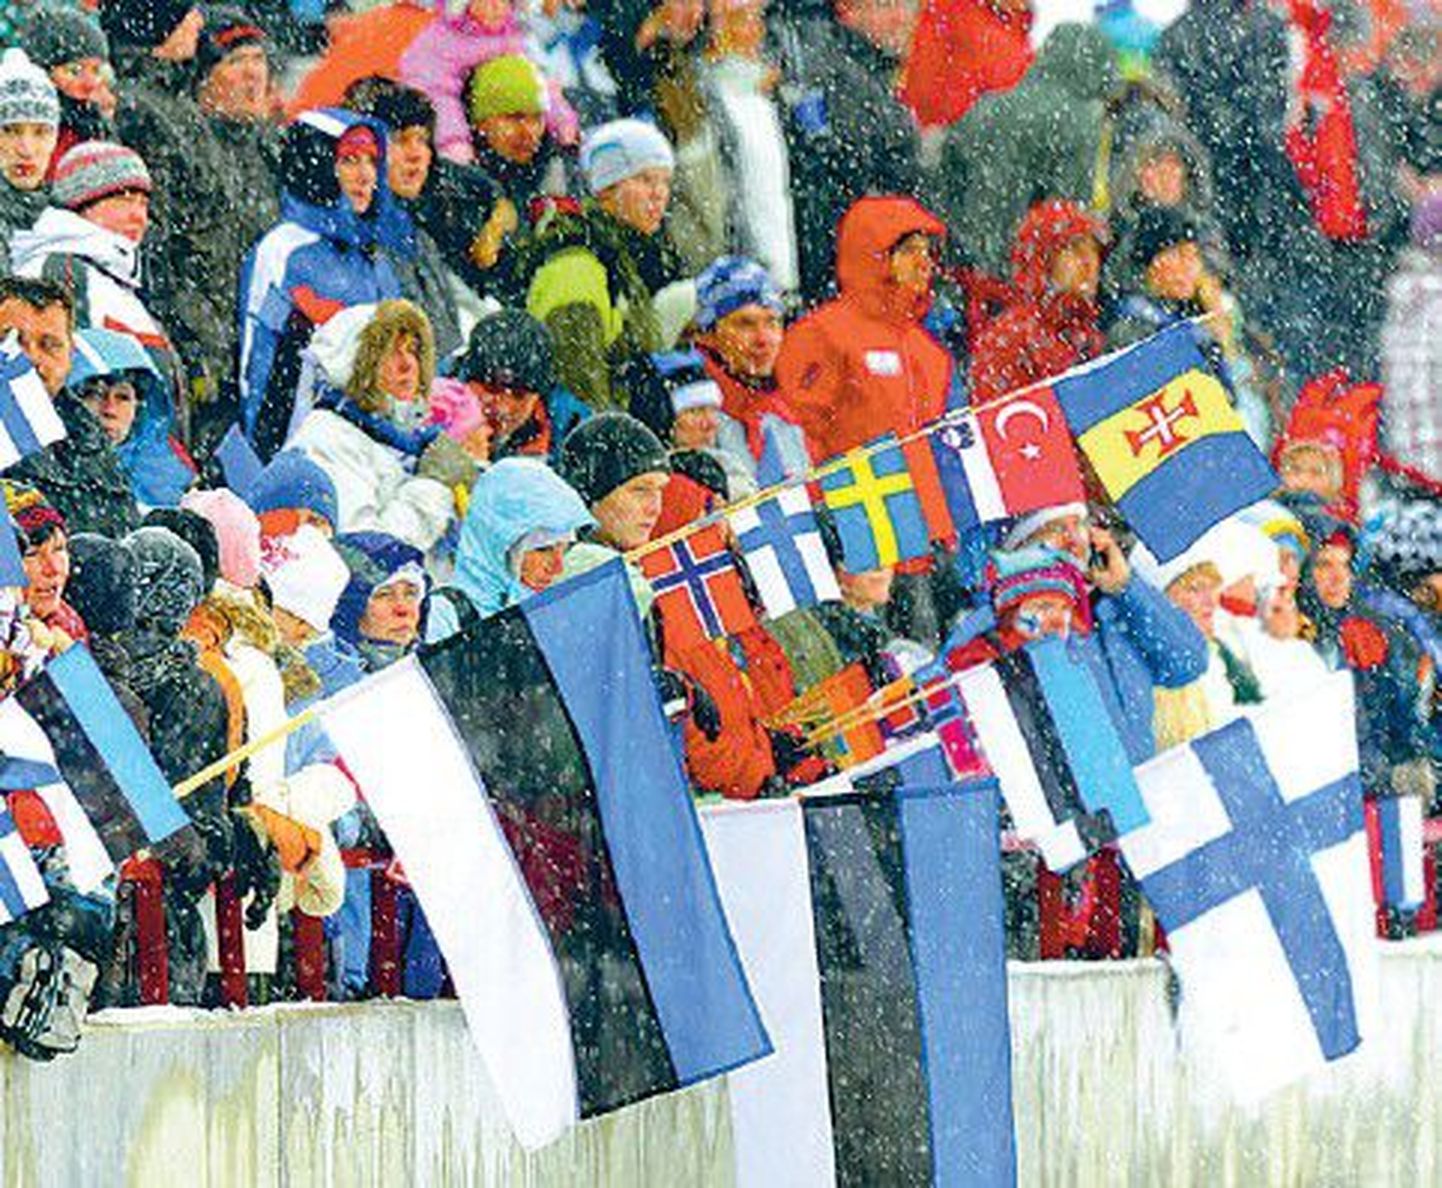 Девять лет отепяэский этап КМ по лыжным гонкам заманивал в Отепяэ тысячи любителей лыжного спорта, а теперь FIS намерен исключить его из календаря соревнований.